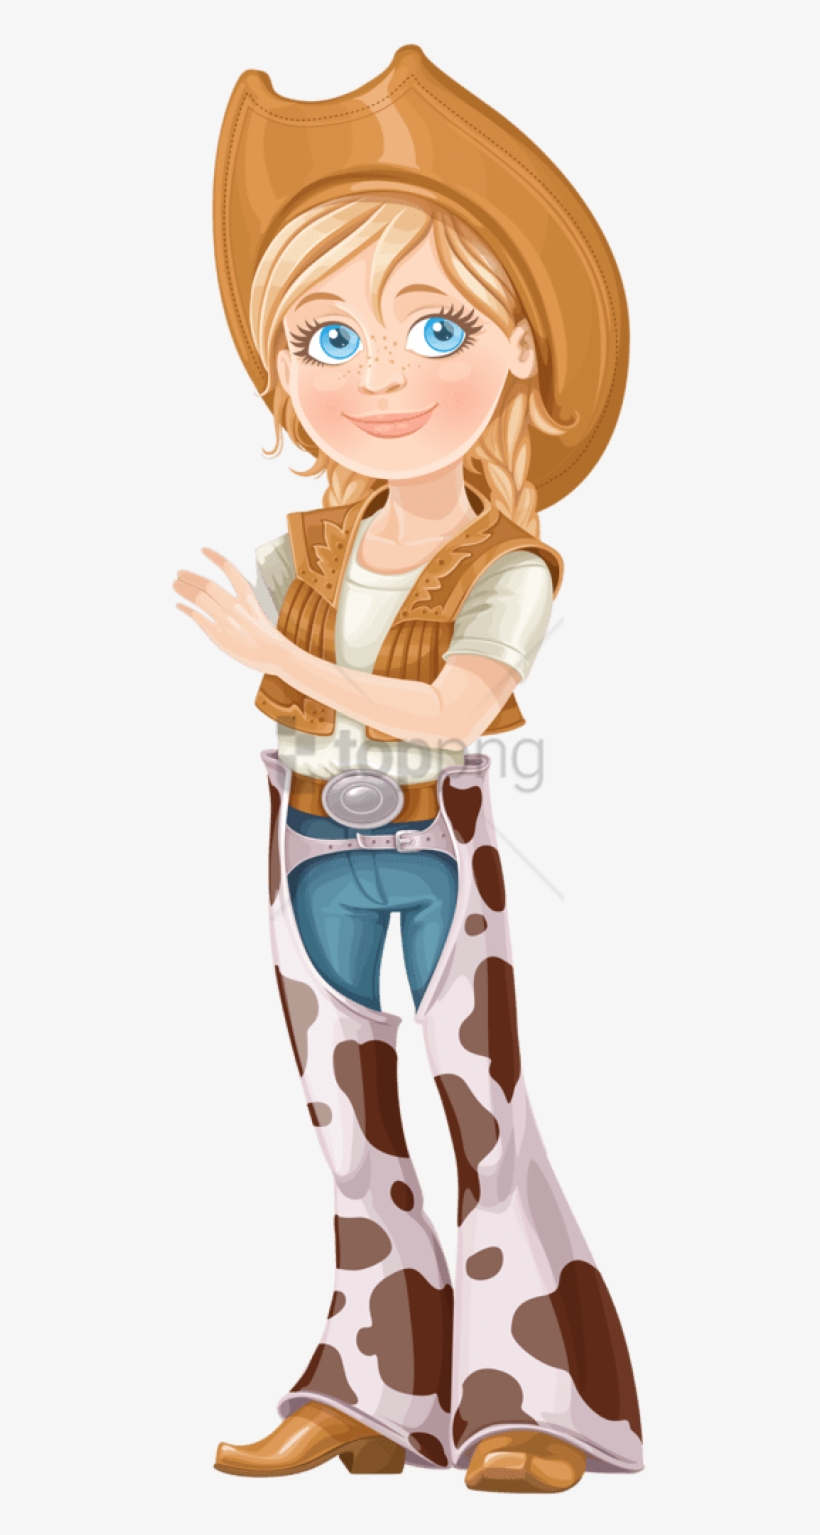 Free Png Download Cowboy Girl Cartoon Png Images Background - Illustration, transparent png #9481669